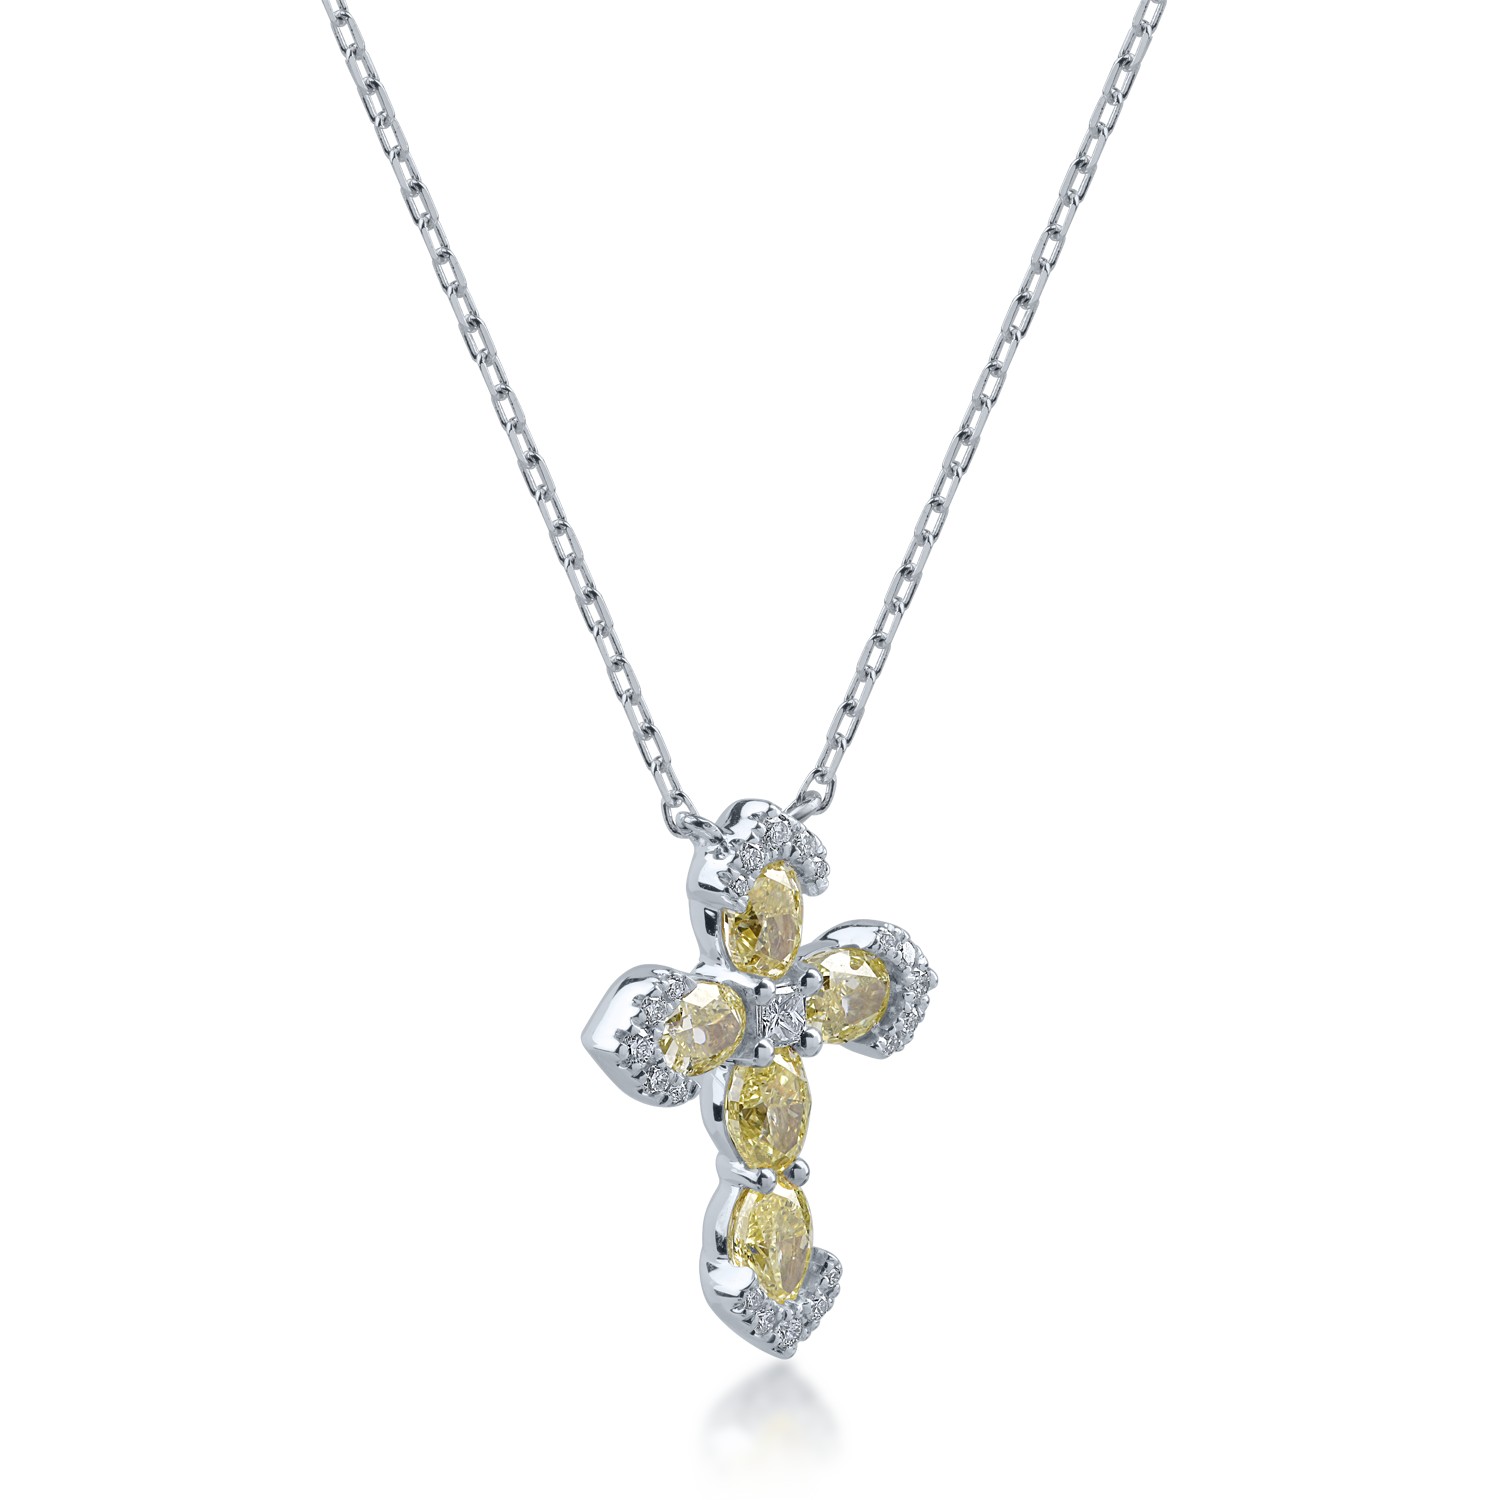 Fehérarany keresztes medál nyaklánc 1.25ct sárga gyémántokkal és 0.13ct tiszta gyémántokkal